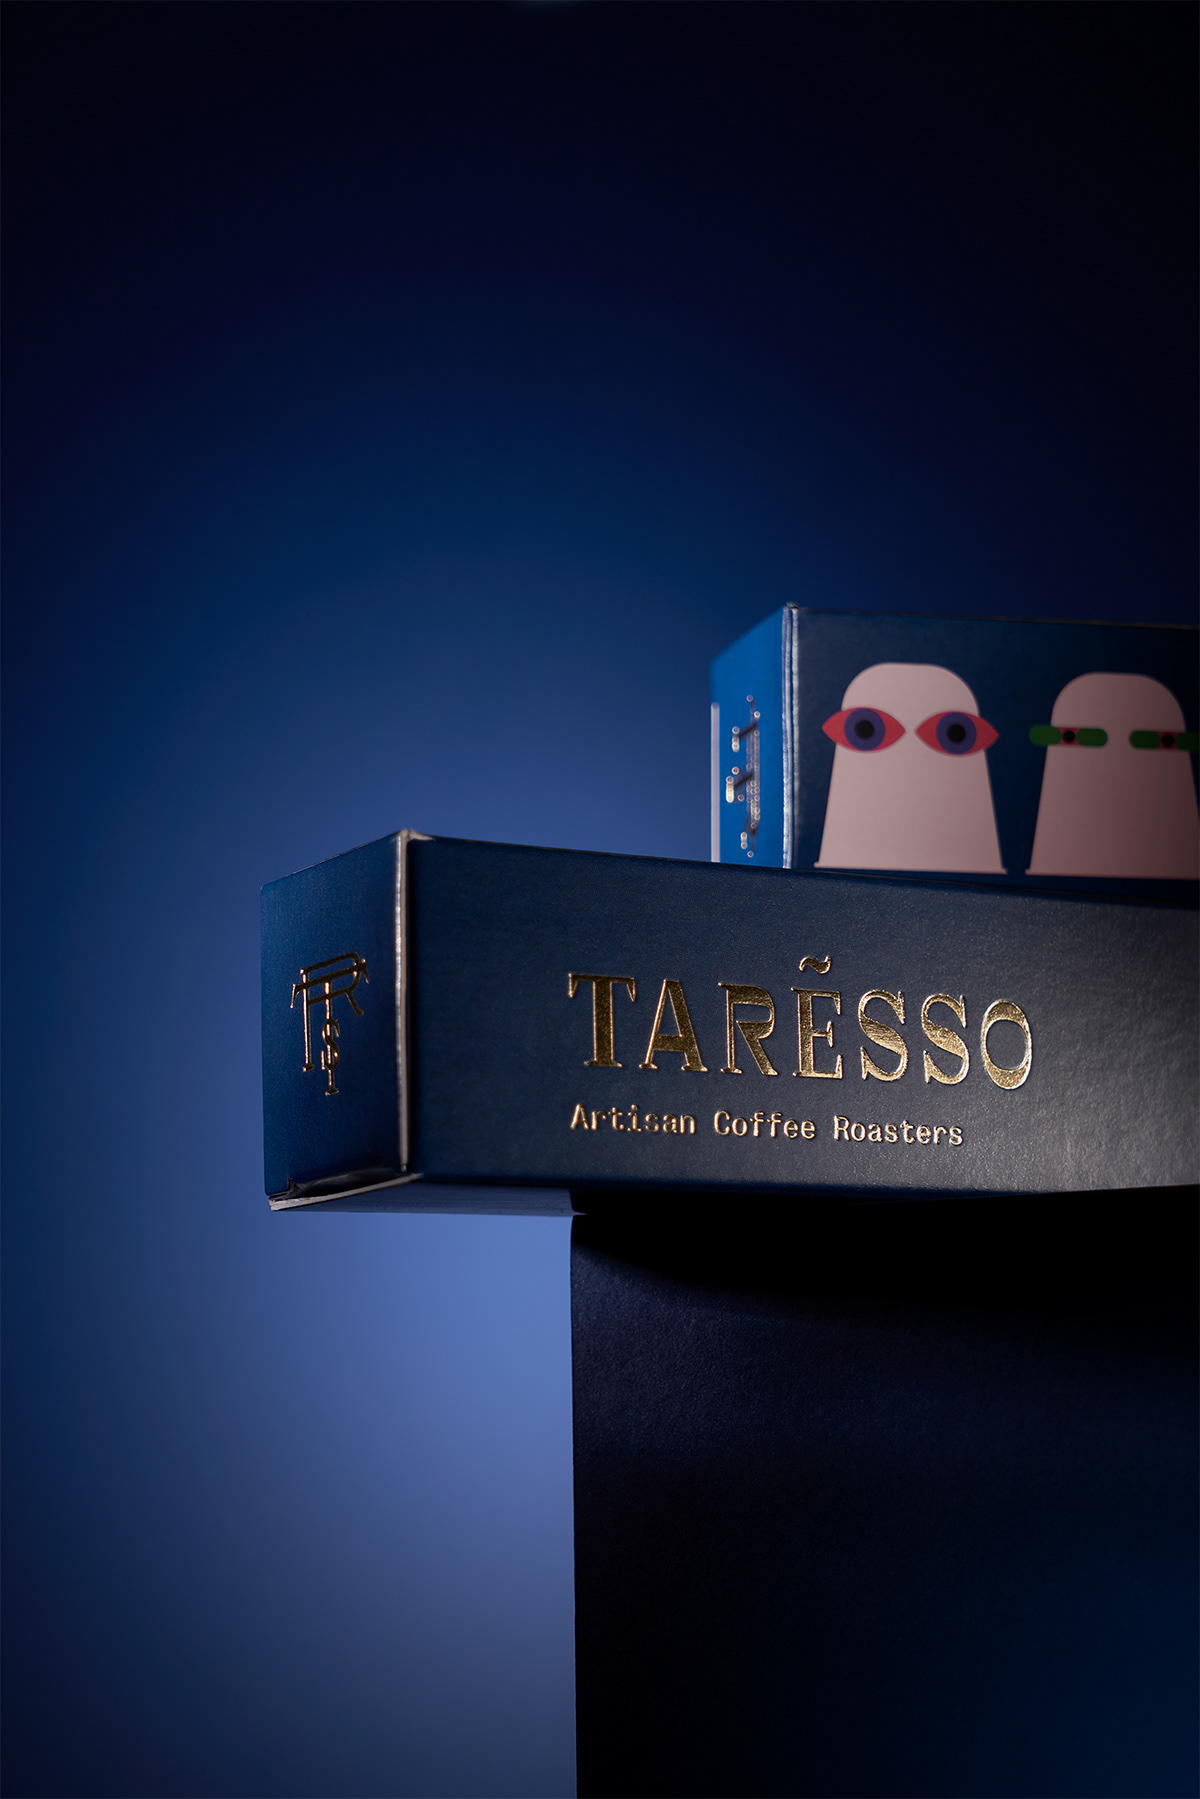 Taresso胶囊咖啡创意包装设计(图5)